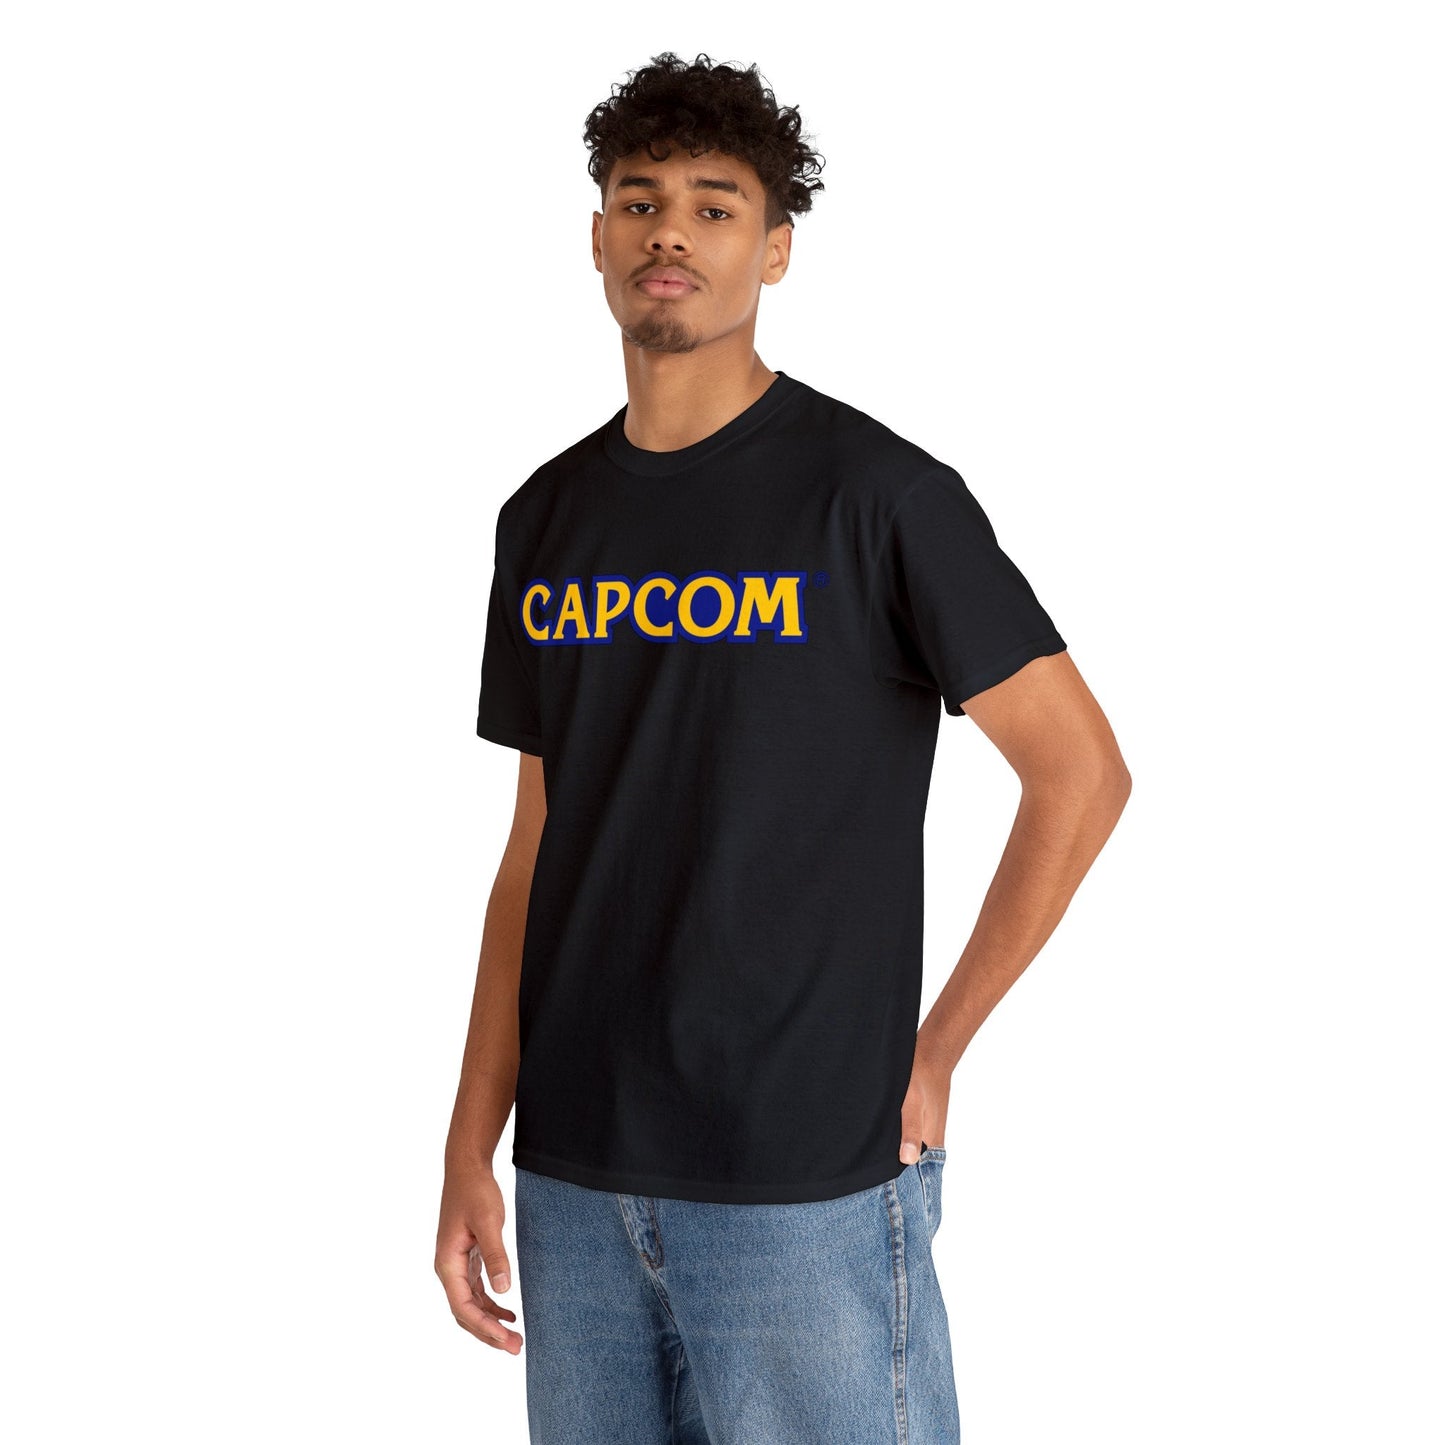 Capcom Video Game Logo T-Shirt - RetroTeeShop